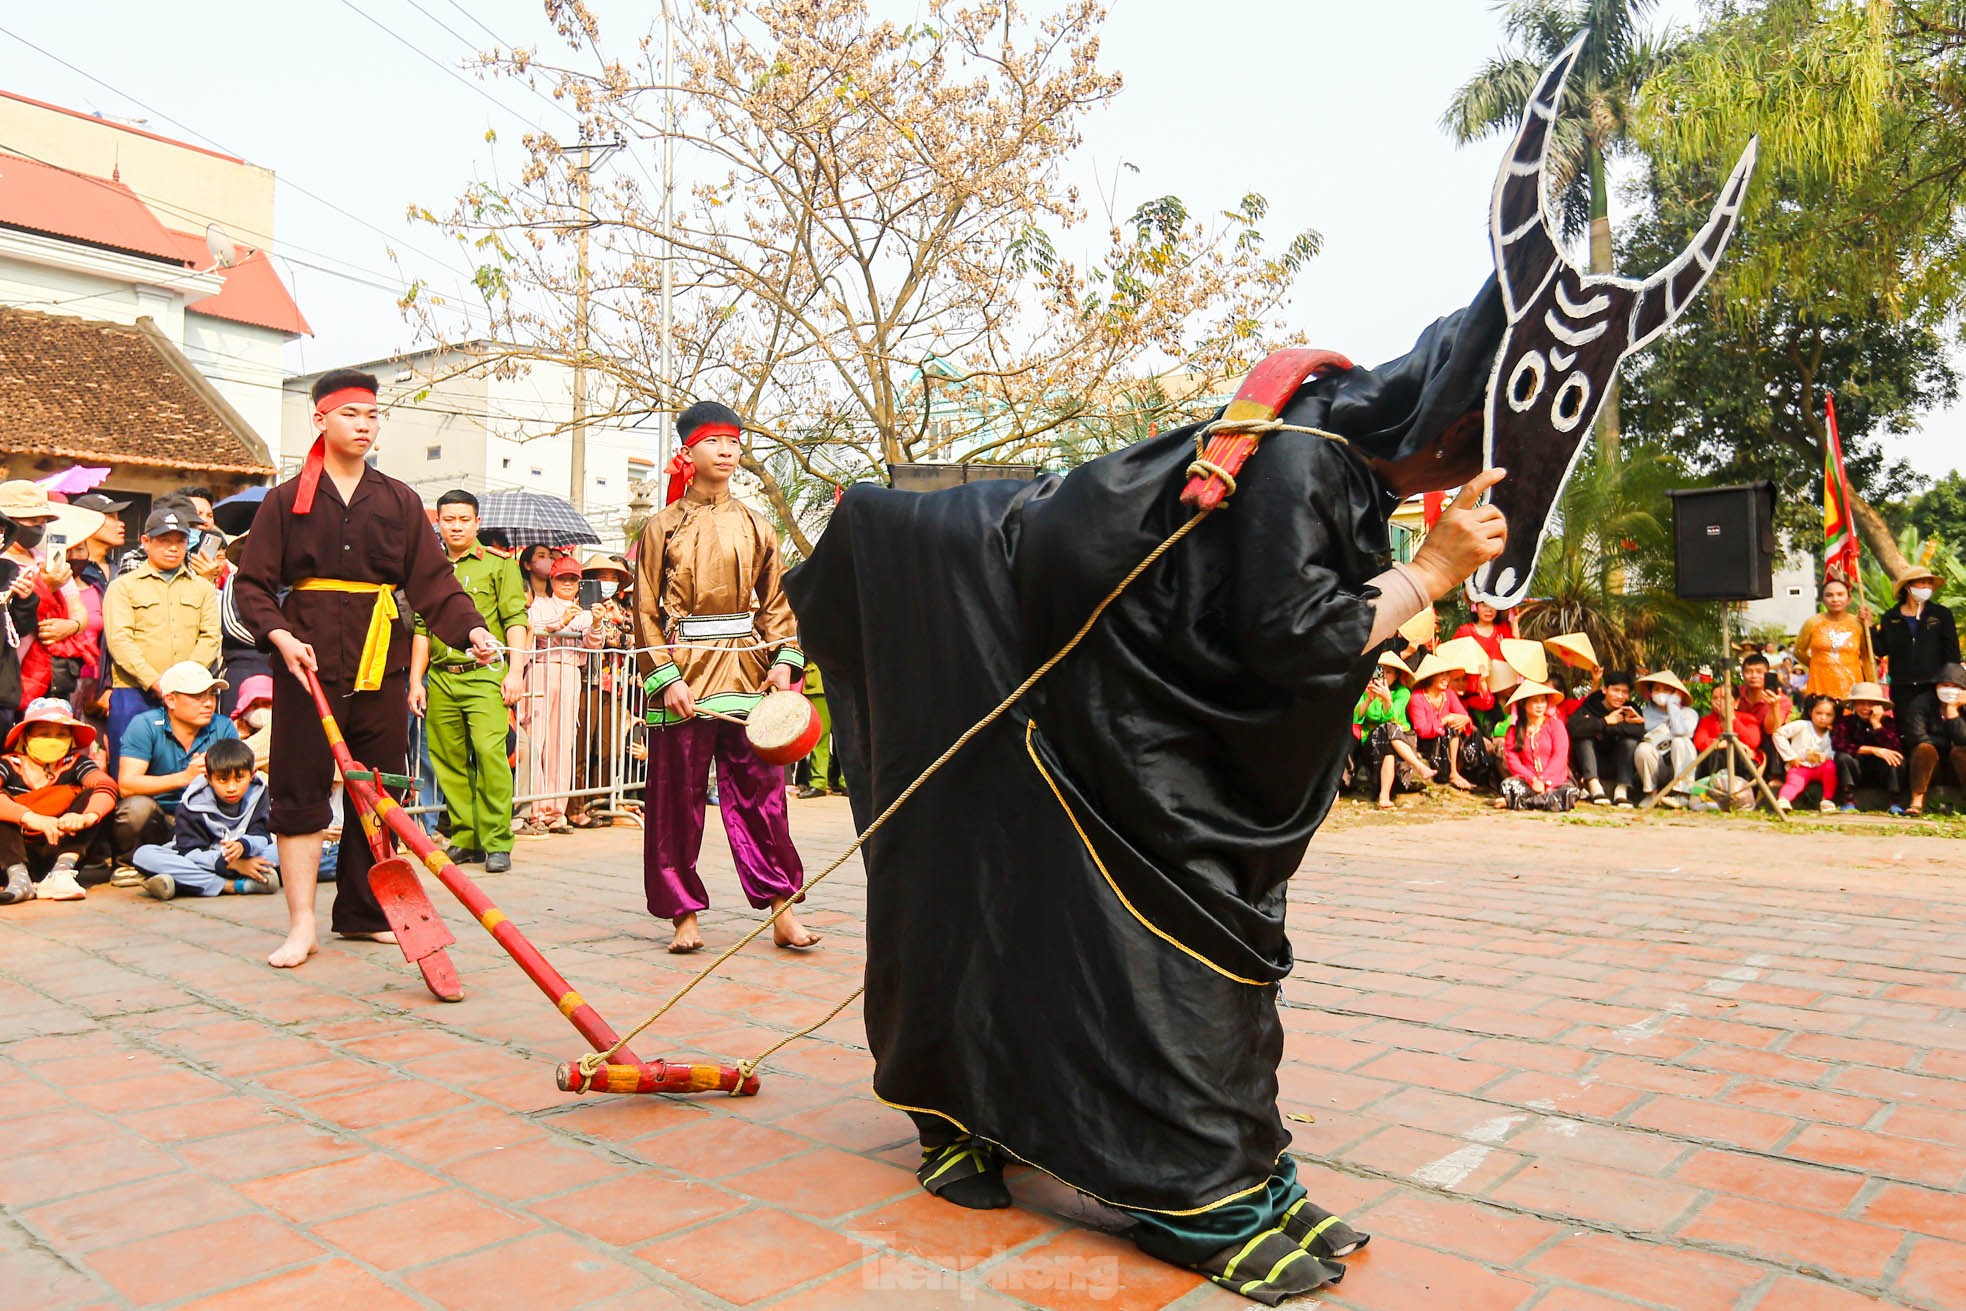 Xem nam nhân thi nhau trổ tài để kén rể tại lễ hội ở Hà Nội ảnh 11